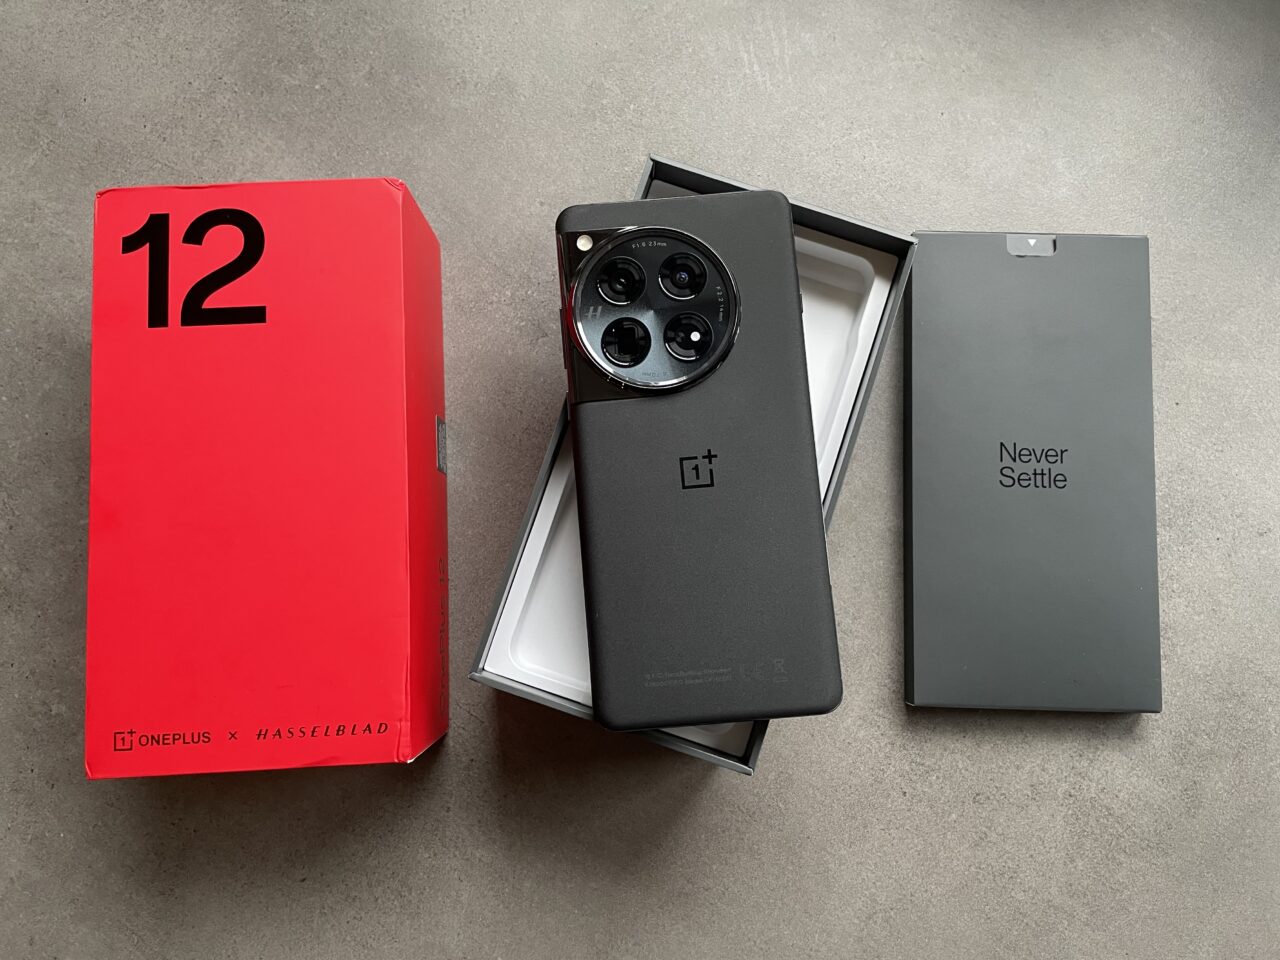 Czerwone pudełko OnePlus z napisem "12" i logotypem Hasselblad, obok otwarte opakowanie z czarnym smartfonem OnePlus i aparatem z trzema obiektywami, oraz szare opakowanie z napisem "Never Settle".